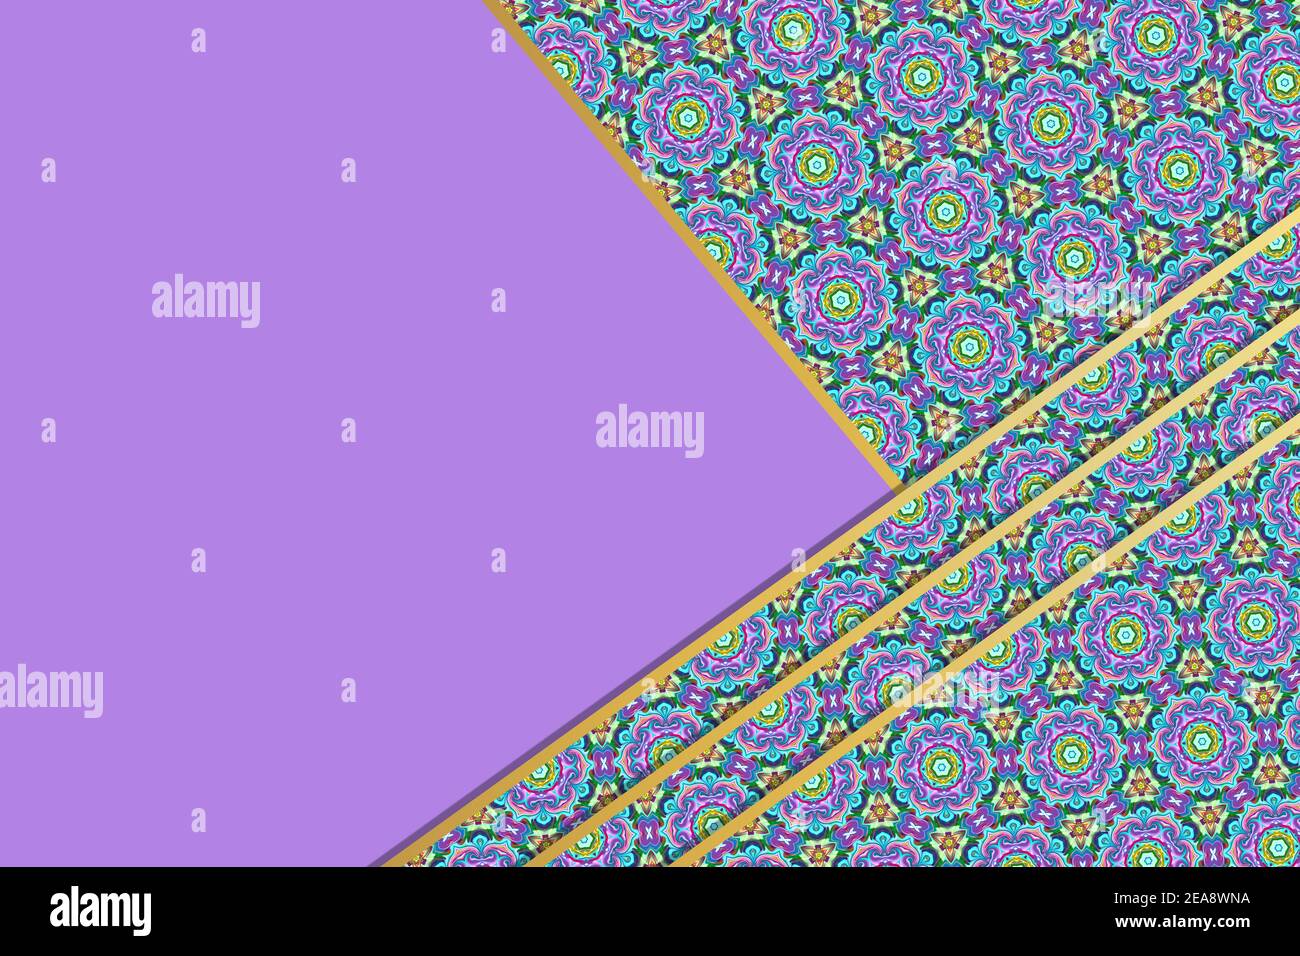 Illustrazione astratta di sfondo di strati diagonali di viola sovrapposto e. carta a motivi blu orlata con un bordo d'oro contro un viola chiaro sfondo Foto Stock